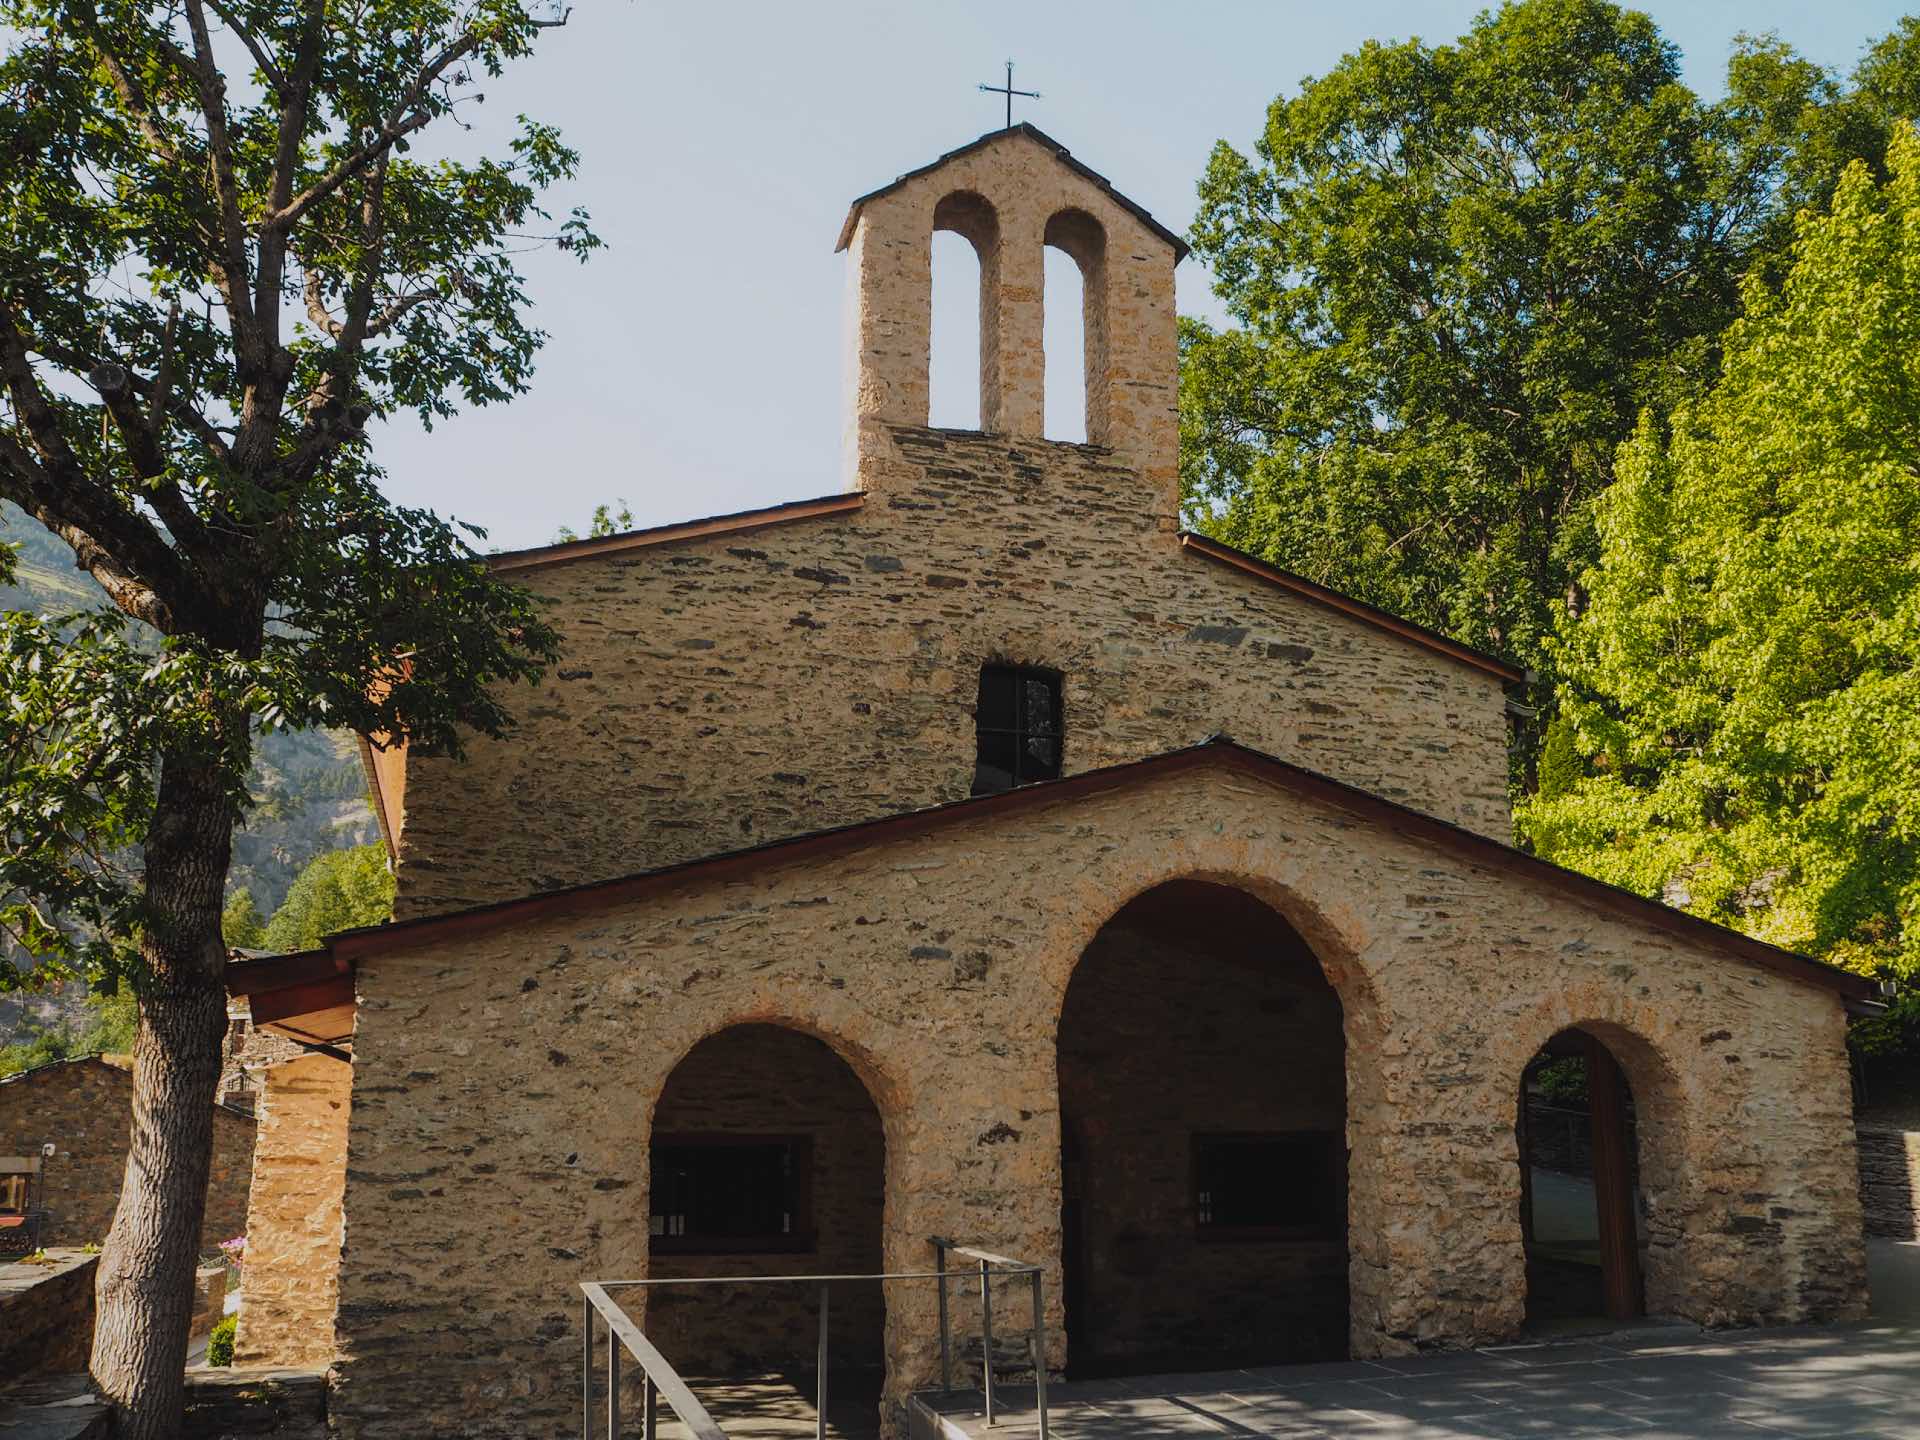 Santuario de Meritxell, el templo religioso más importante de Andorra